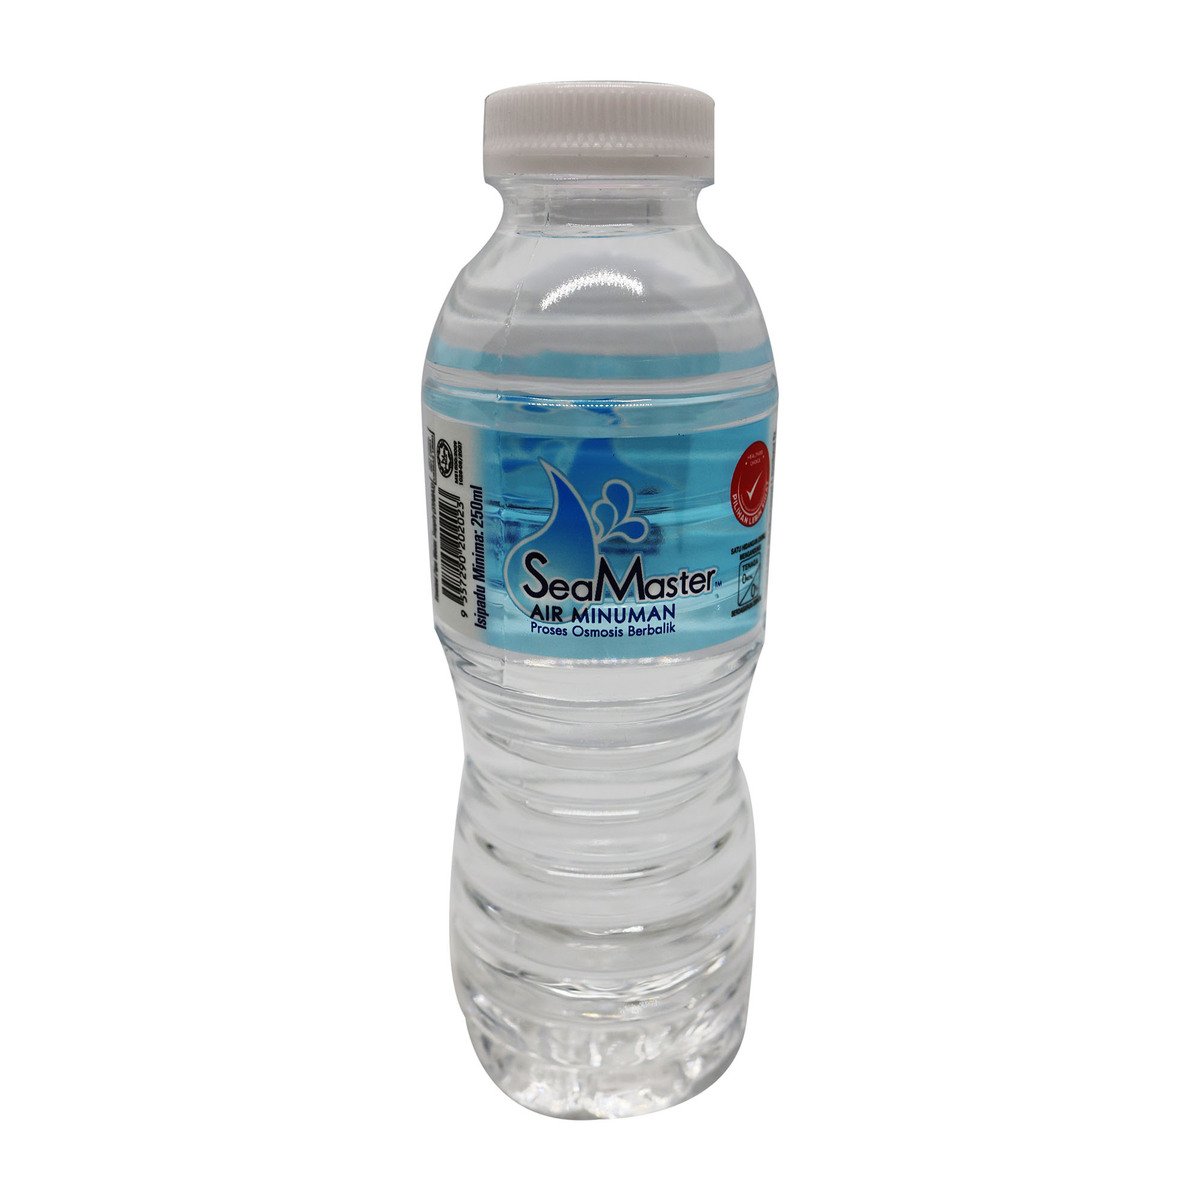 Seamaster Drink Water 250ml 1Pcs